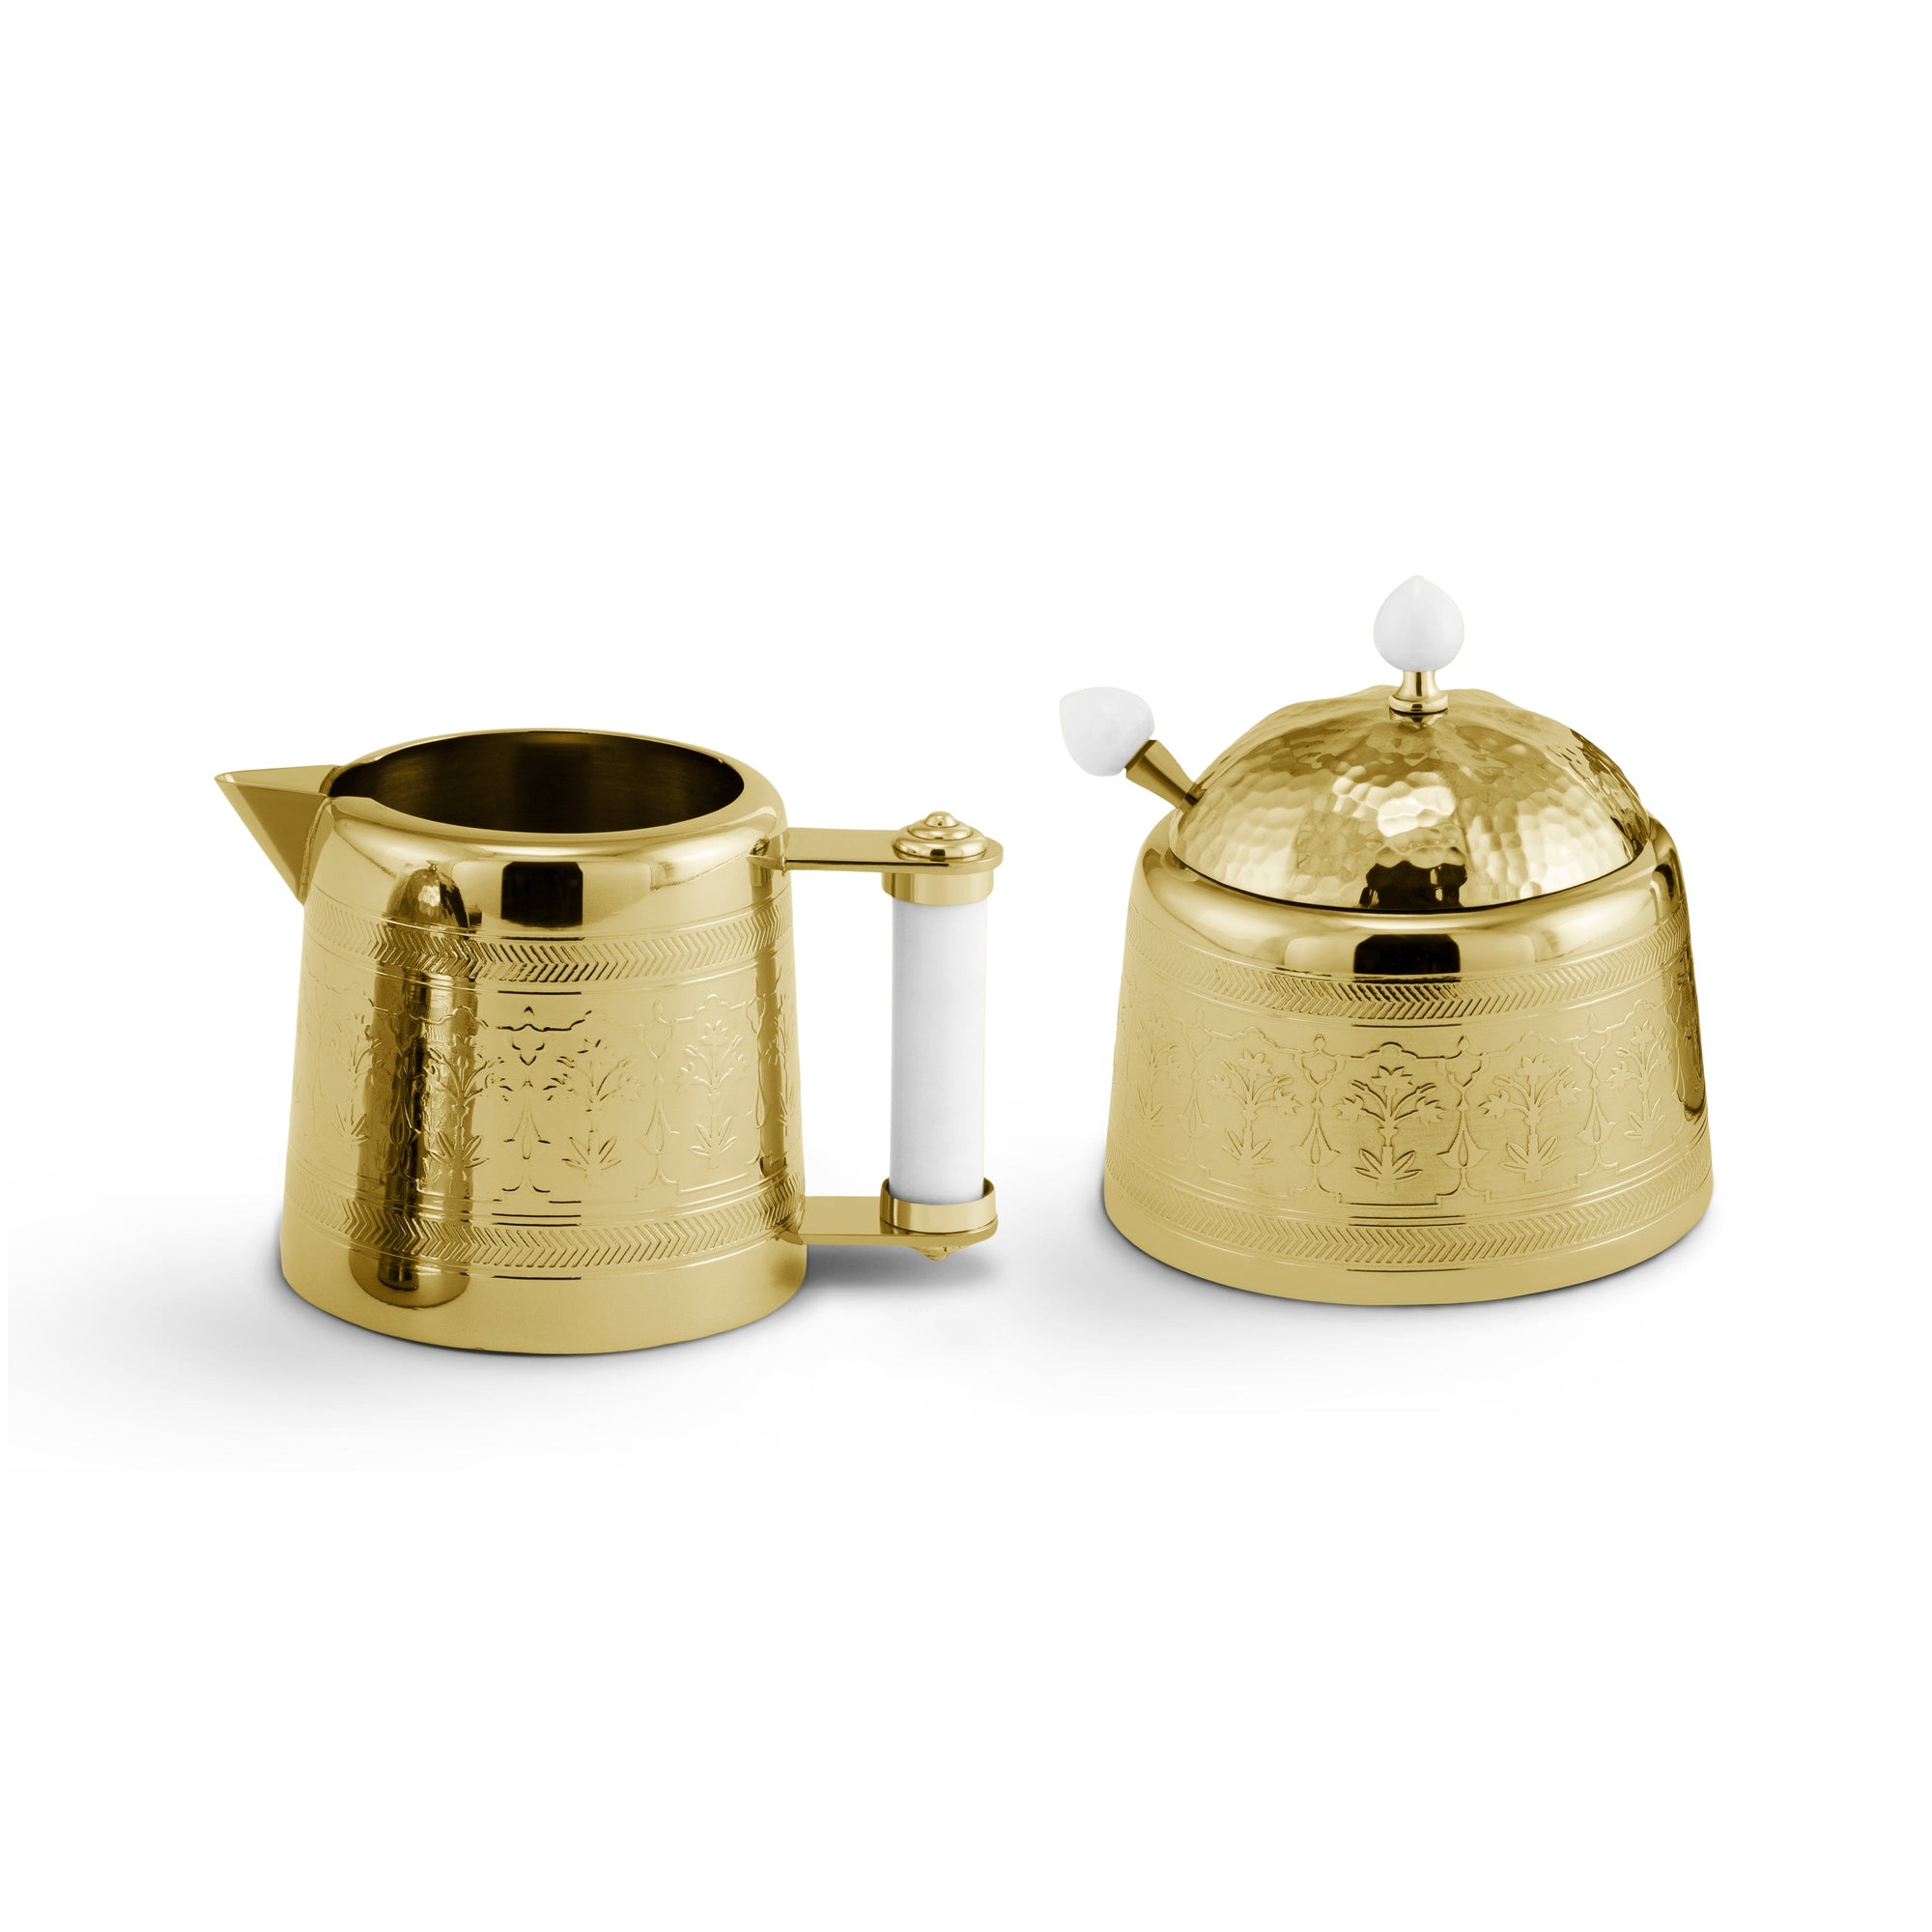 Michael Aram Palace Gold Tea Set